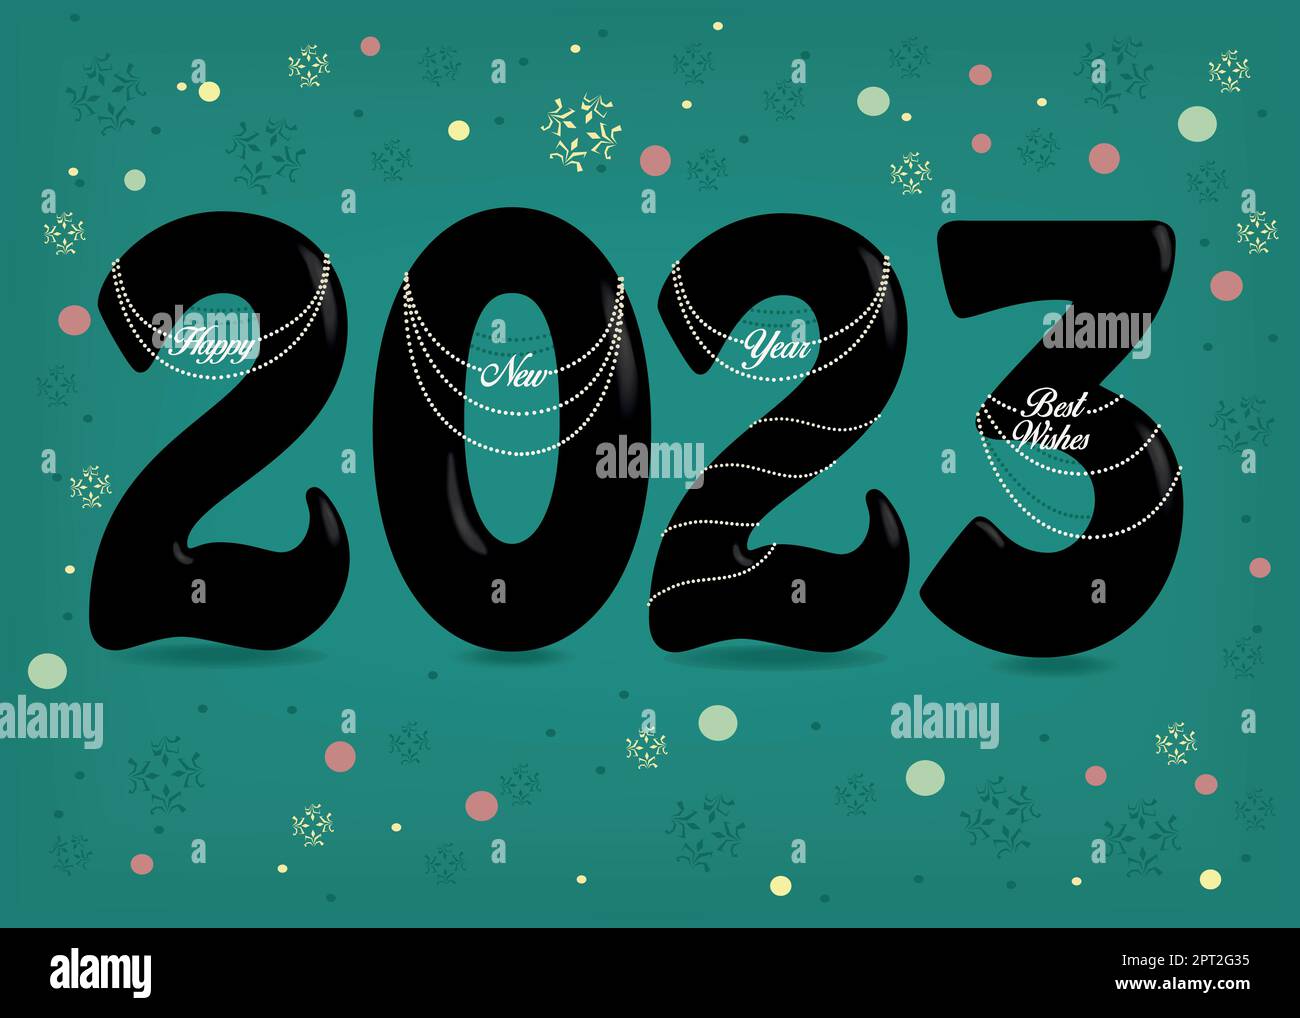 Schwarze Nummer 2023 mit weißem Perlkragen und Texten als Anhänger - Happy New Year Best wishes. Grüner Hintergrund mit bunten Konfetti. Vektordarstellung Stock Vektor